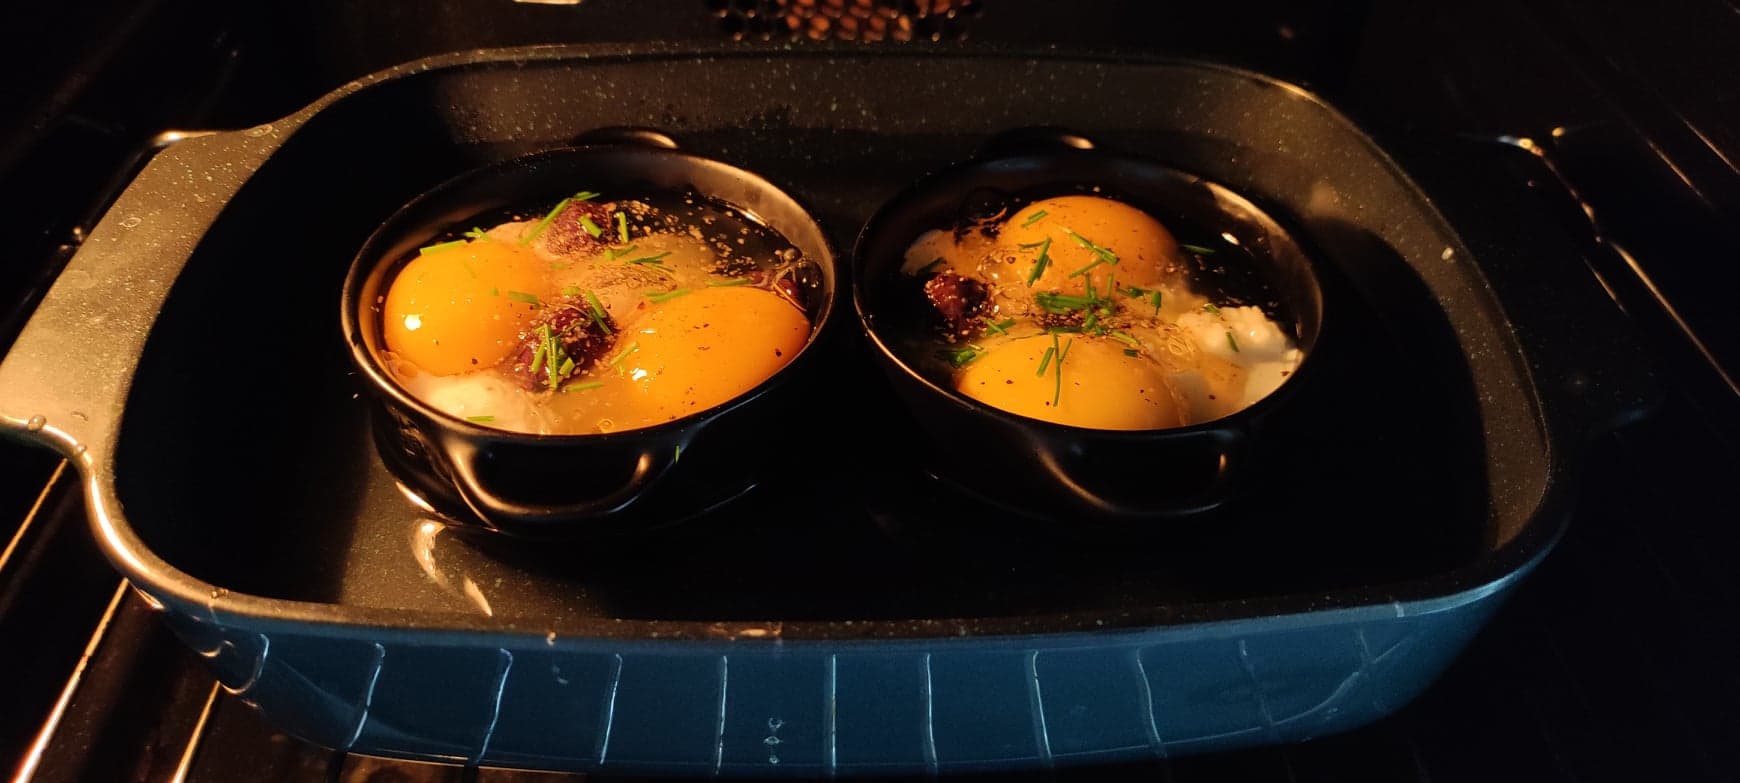 Les œufs en cocotte à l'italienne sont cuits au bain-marie dans le four.